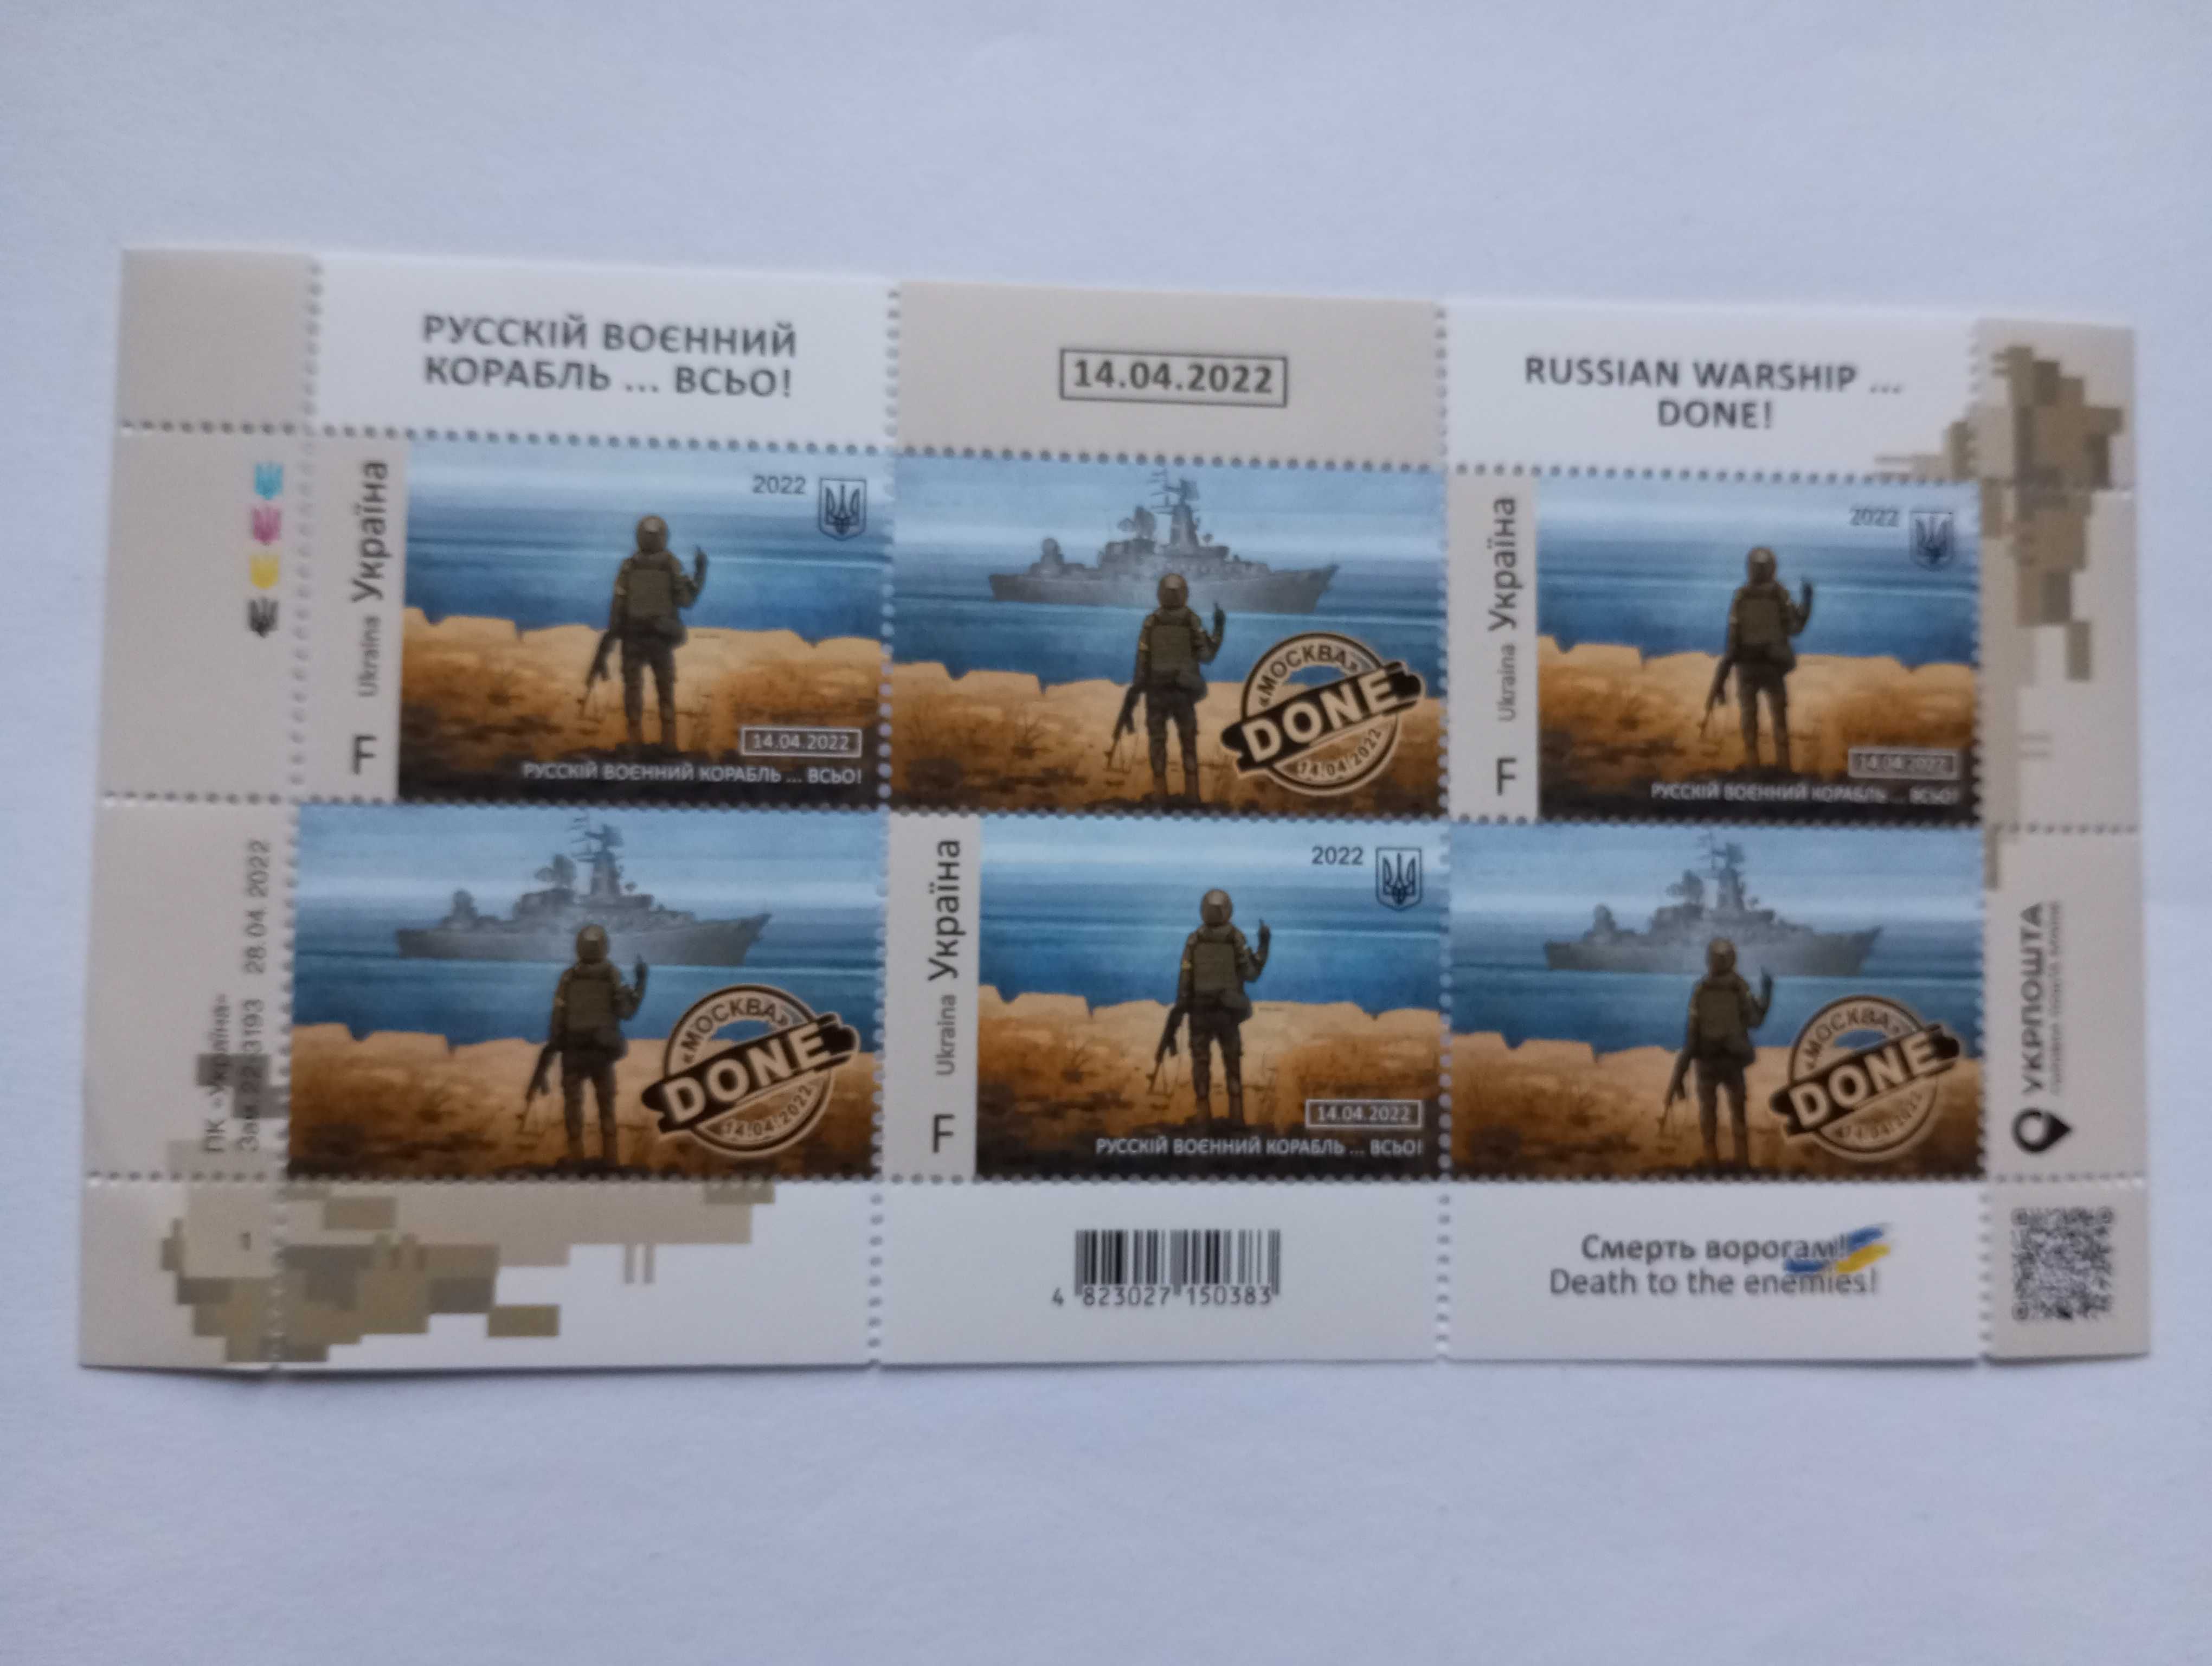 Почтовая марка Украины "Русский военный корабль всьо ..." и другие